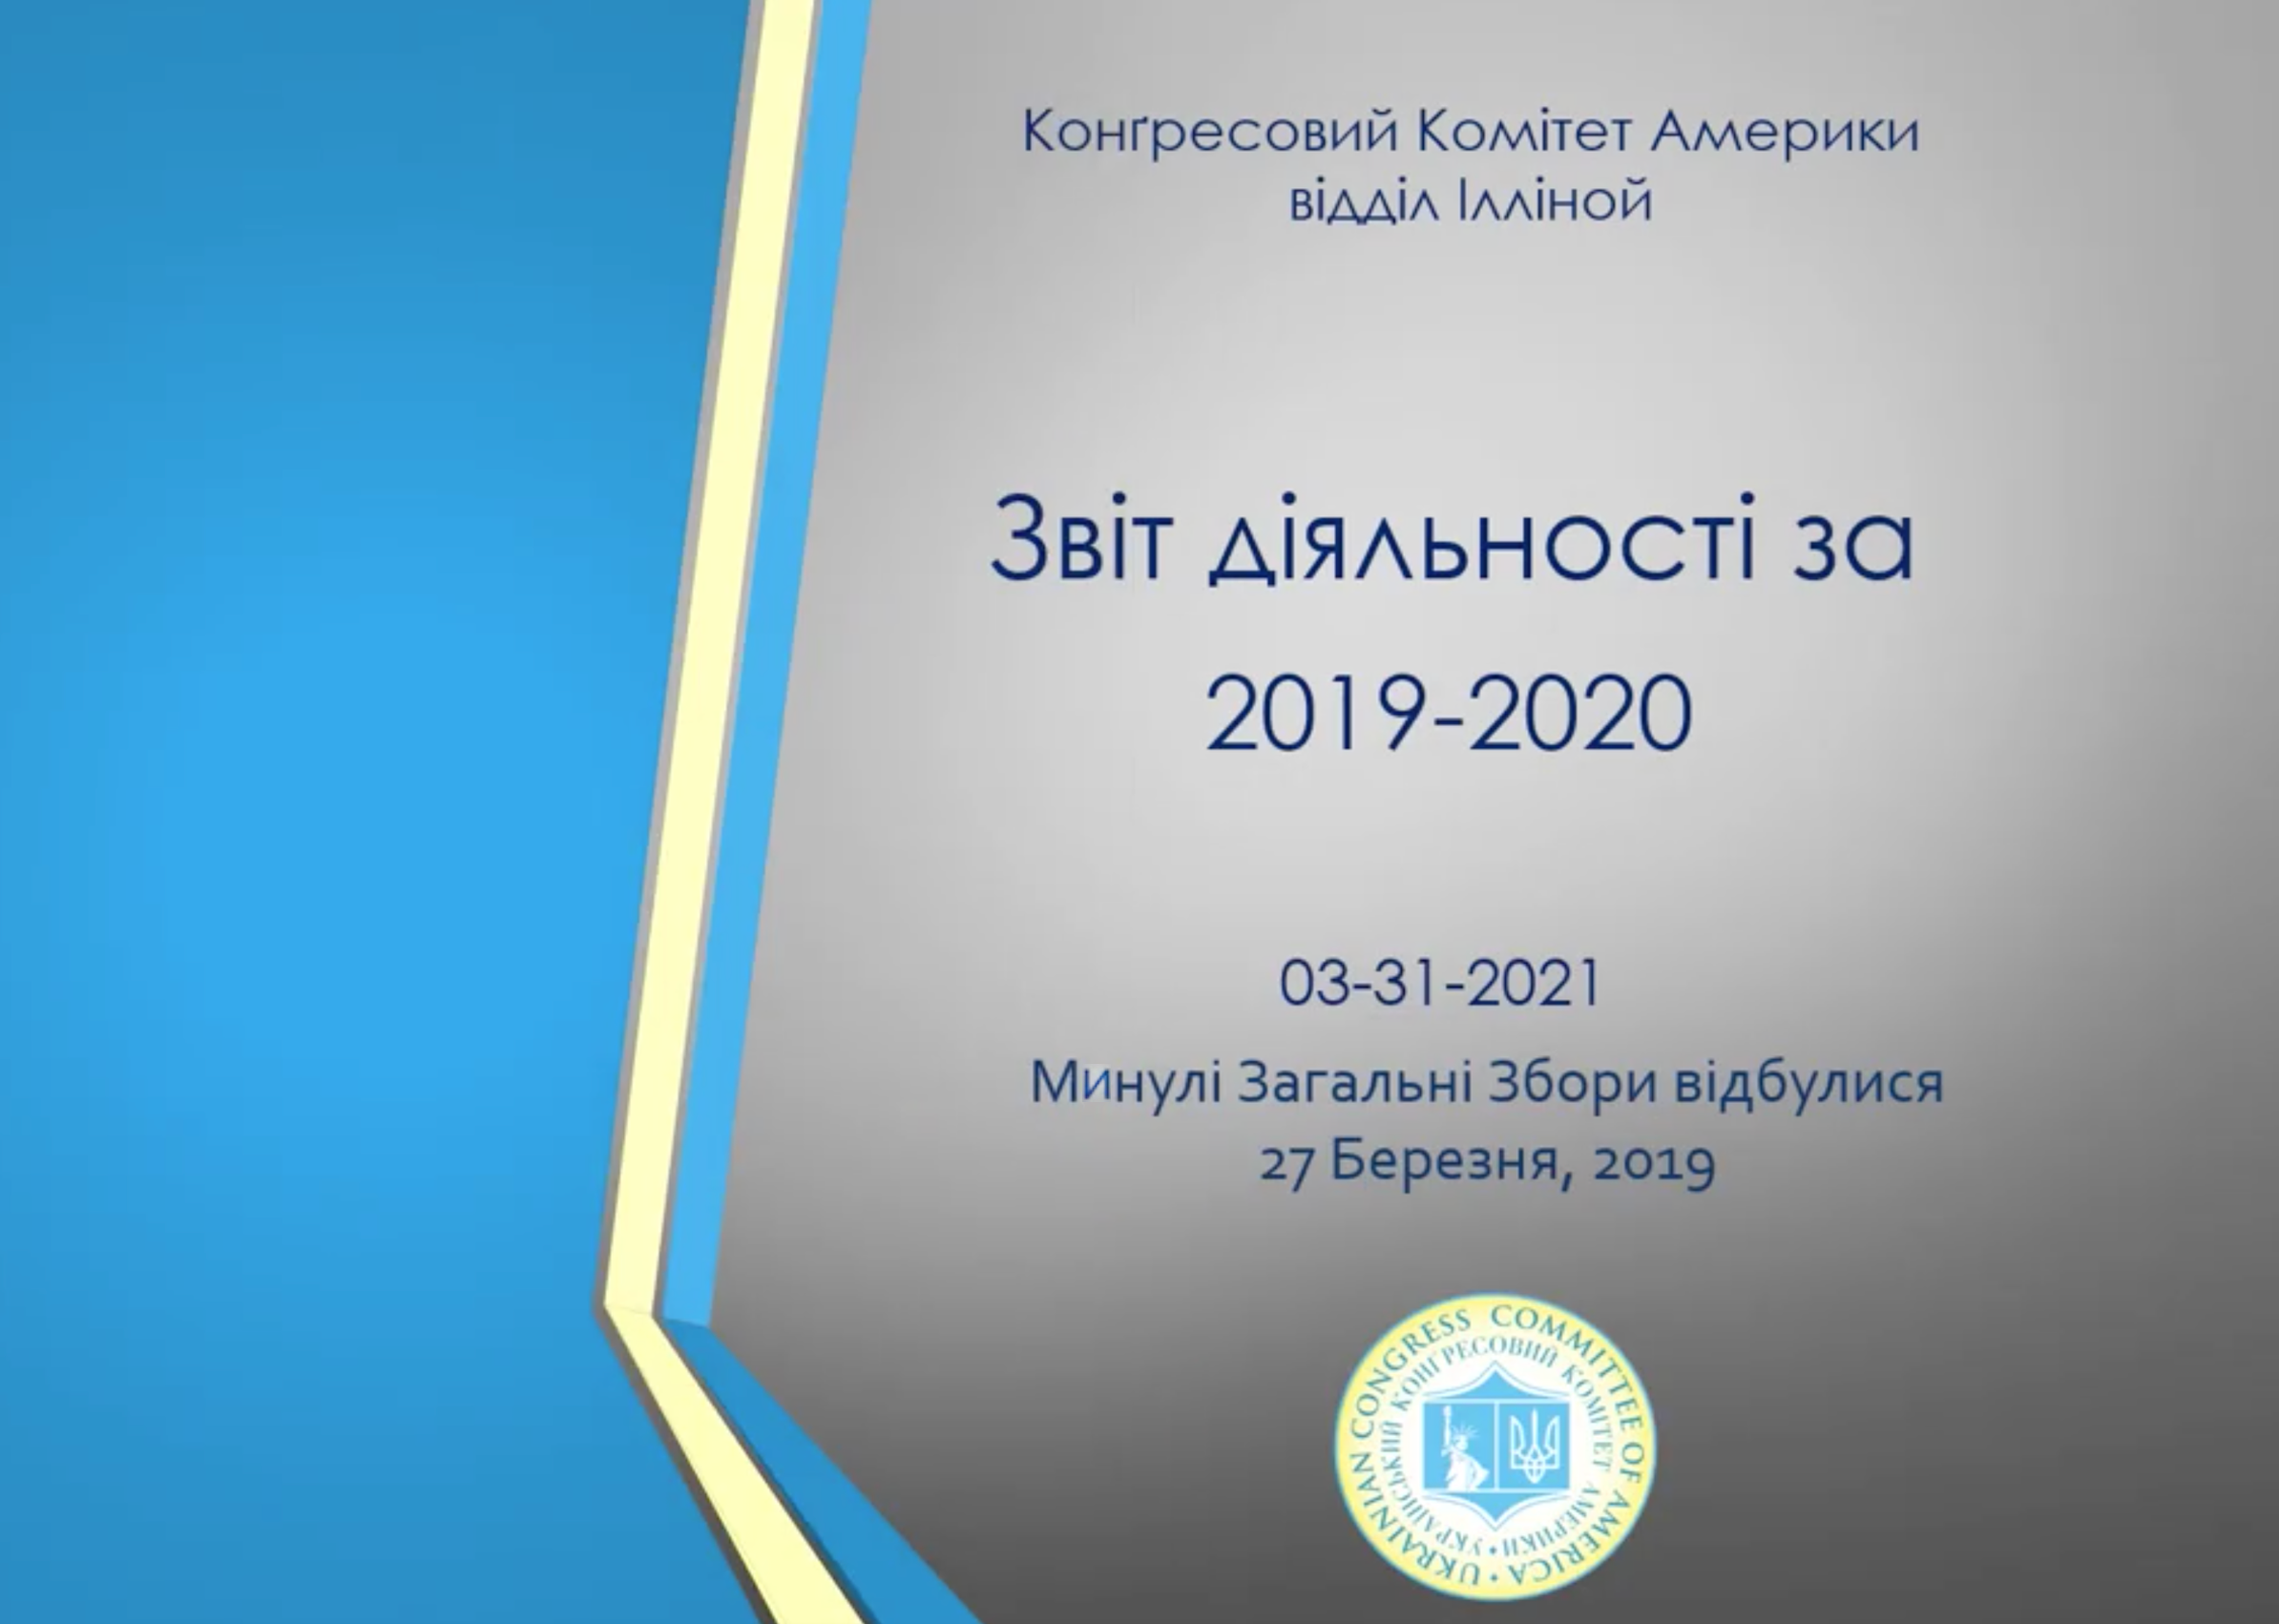 Featured image for “Загальні Збори УККА і Звіт діяльності УККА, відділу ІЛ за 2019-2020”